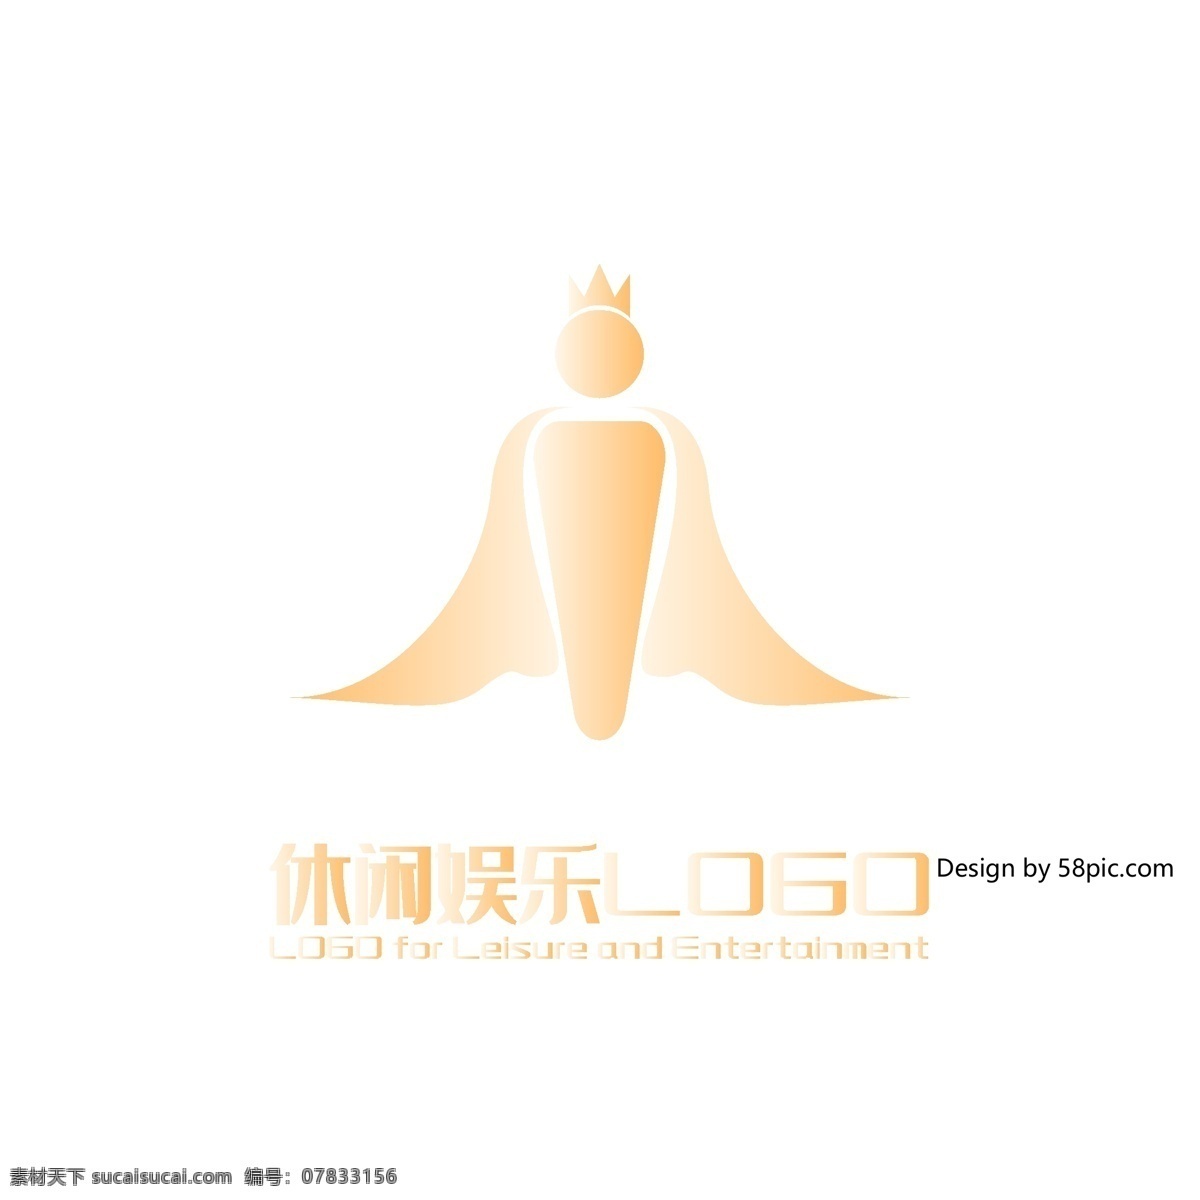 原创 手绘 i 字 国王 游戏厅 休闲 娱乐 logo 可商用 简约 字体设计 标志